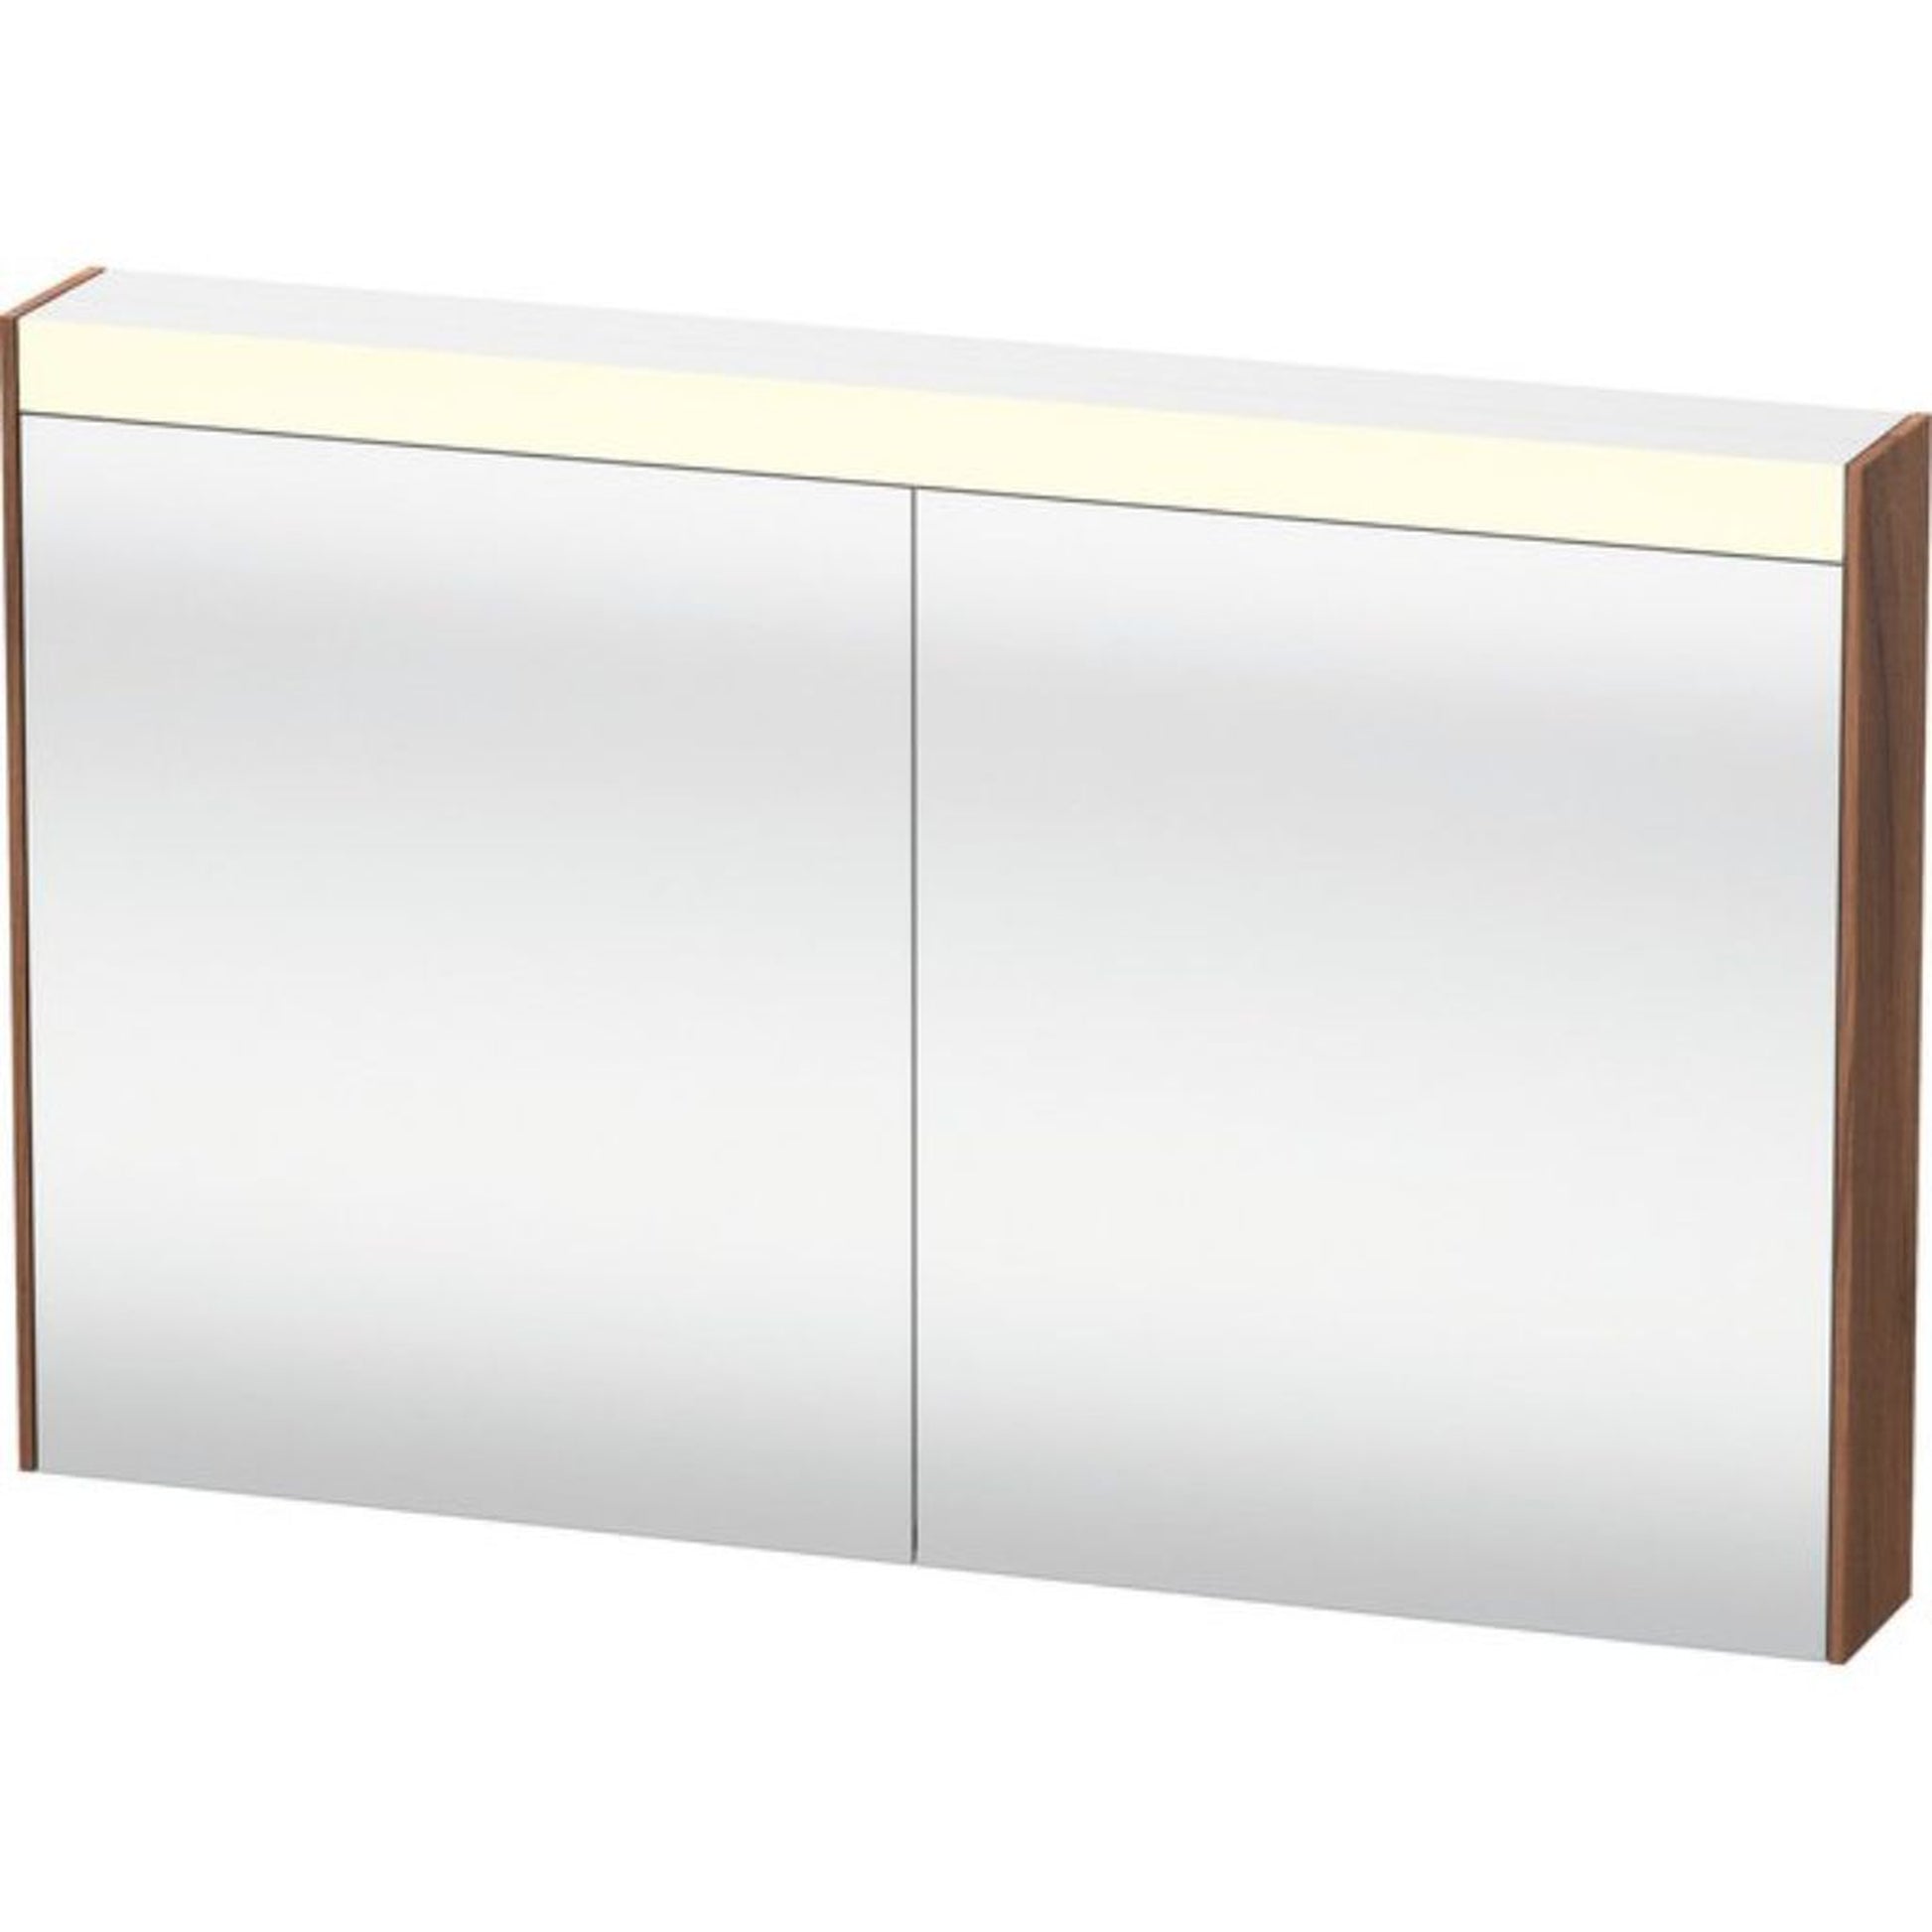 Duravit Brioso 40" x 30" x 6" Mirror Cabinet With Lighting Natural Walnut